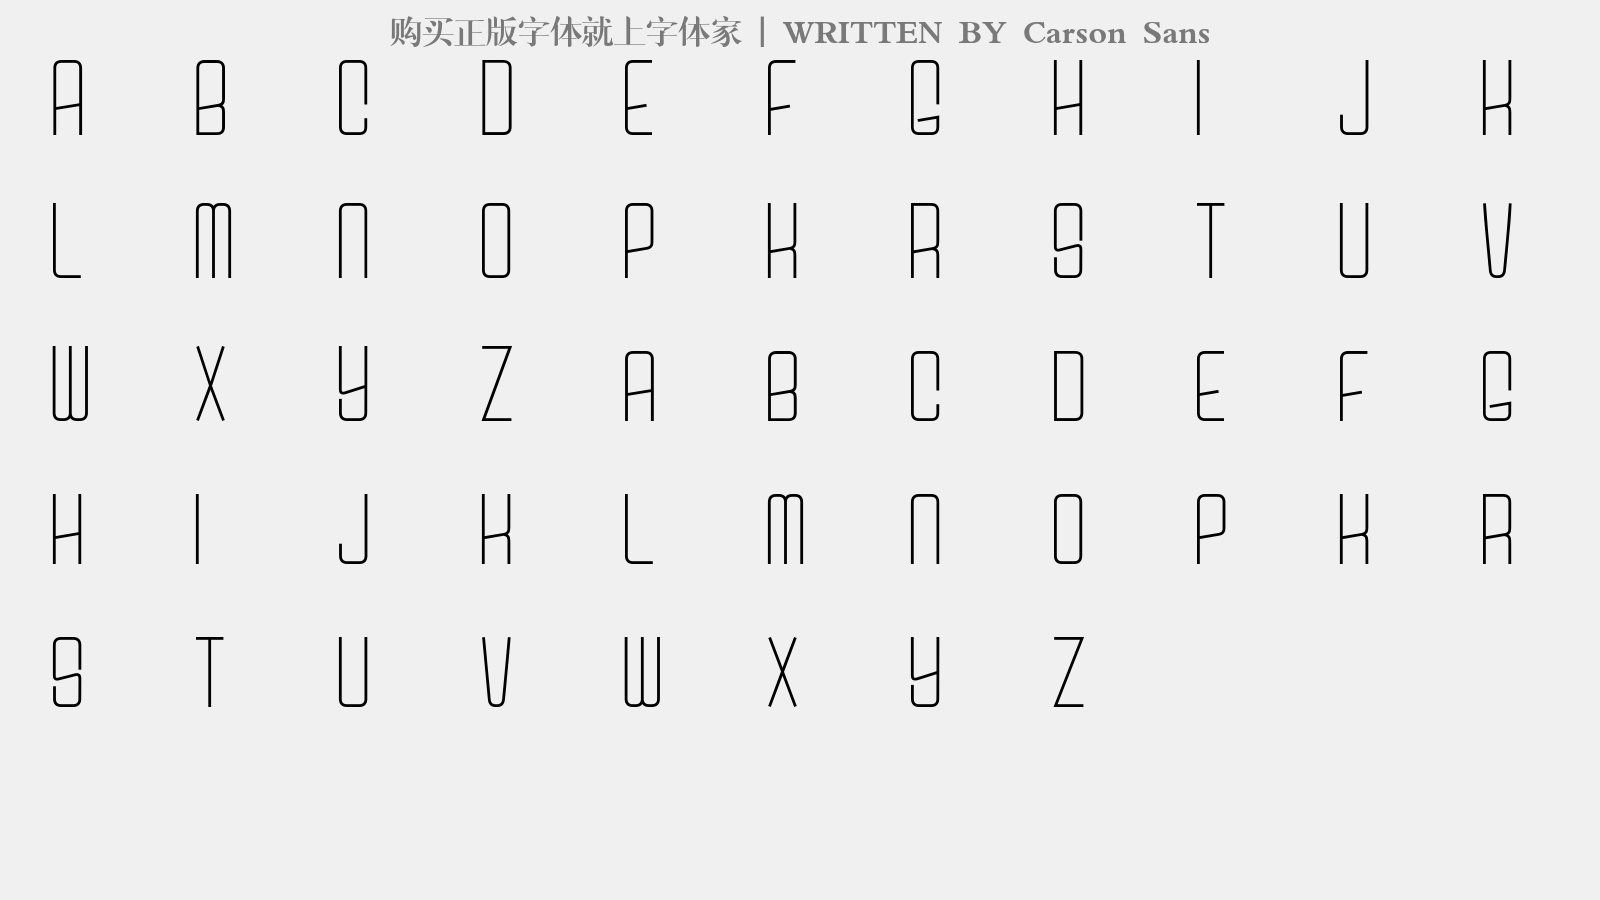 Carson Sans - 大写字母/小写字母/数字